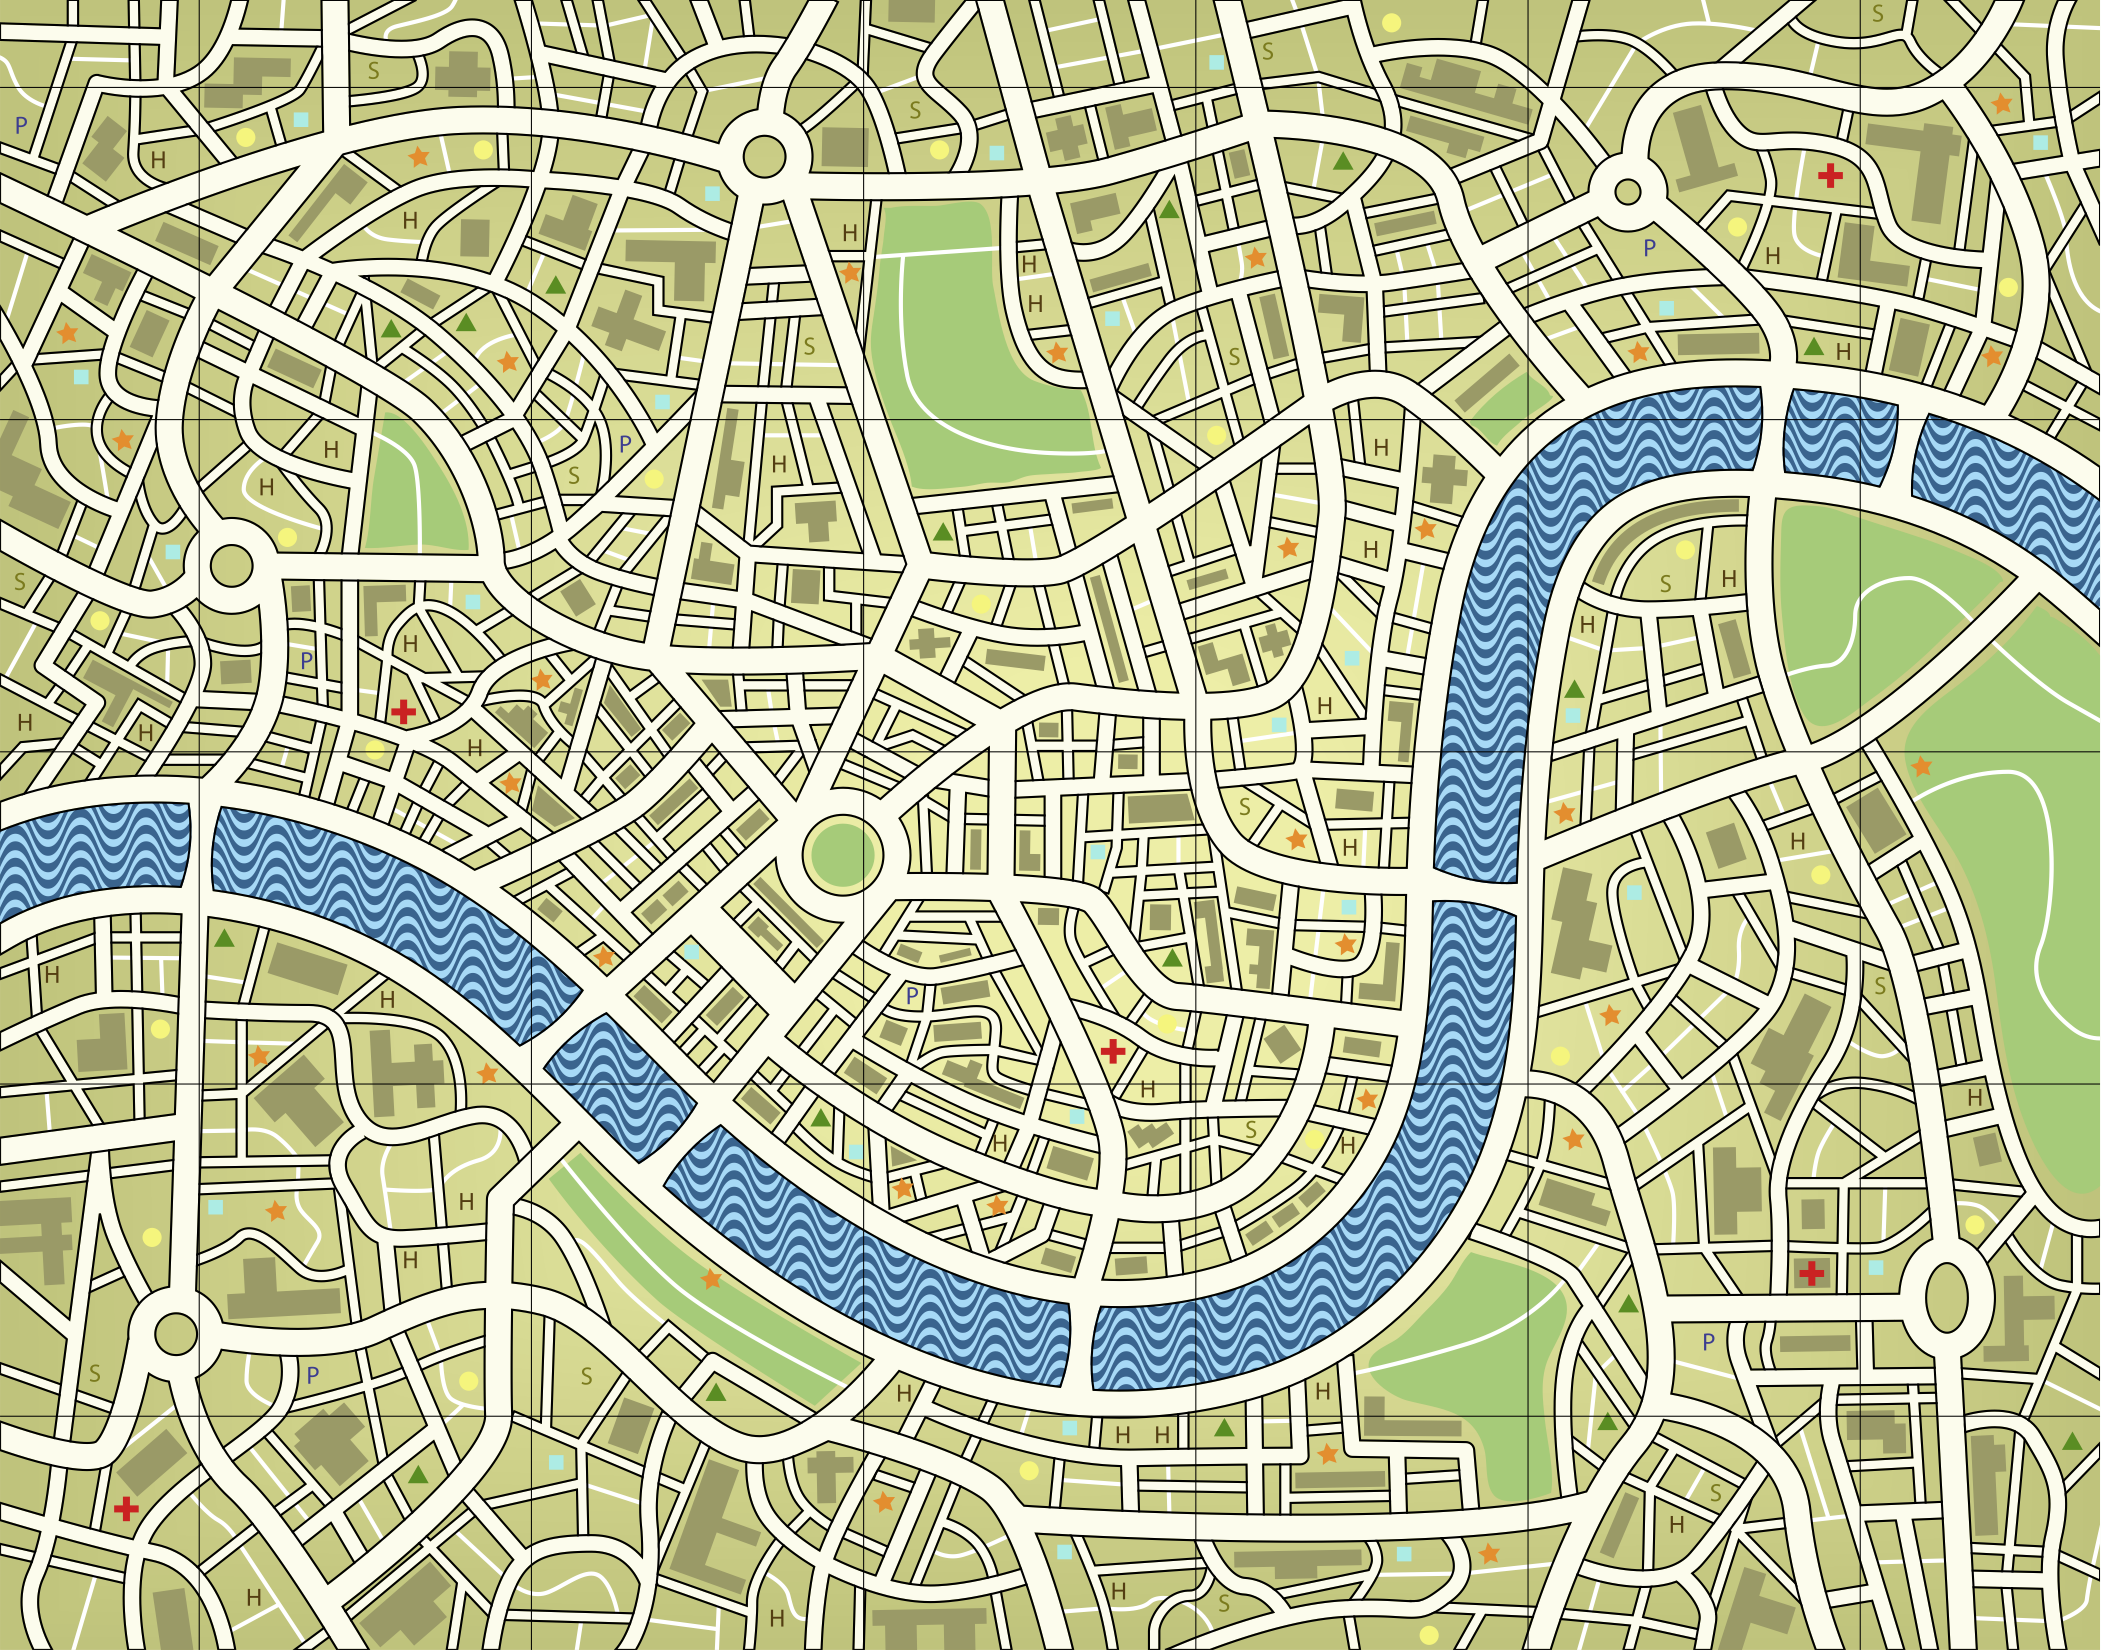 London map no names